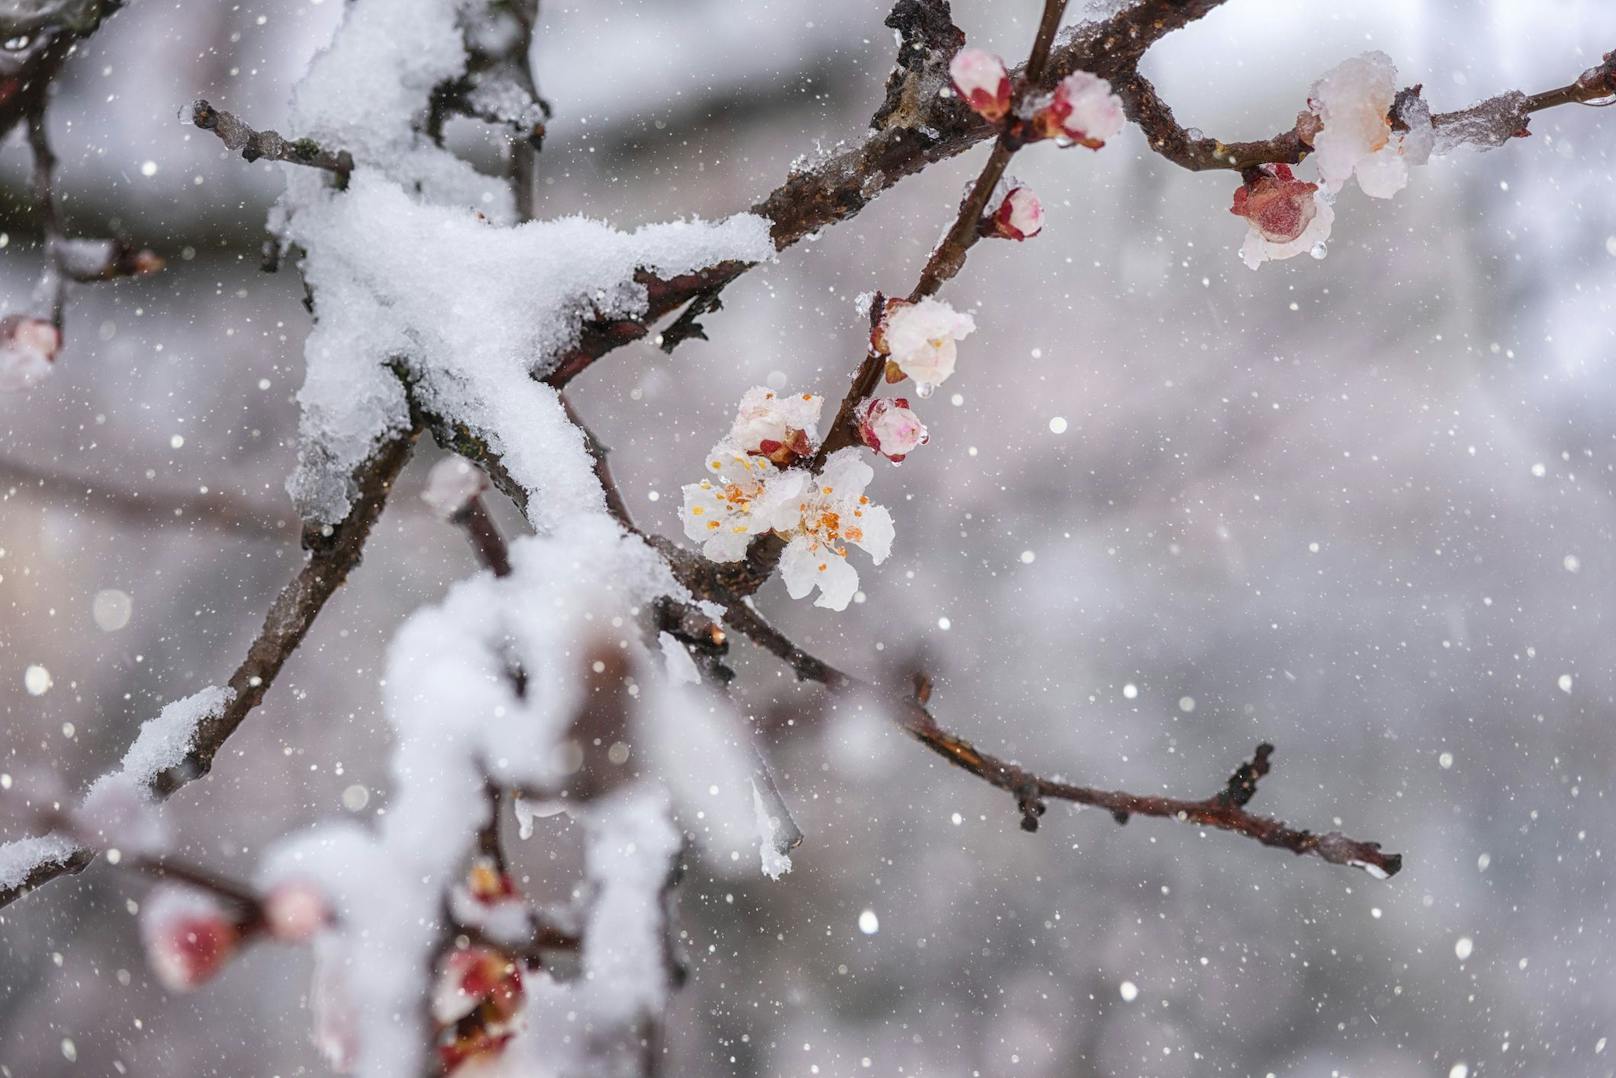 Ausgerechnet zur Marillenblüte brach der Winter mit Eis und Schnee neuerlich über Österreich herein.